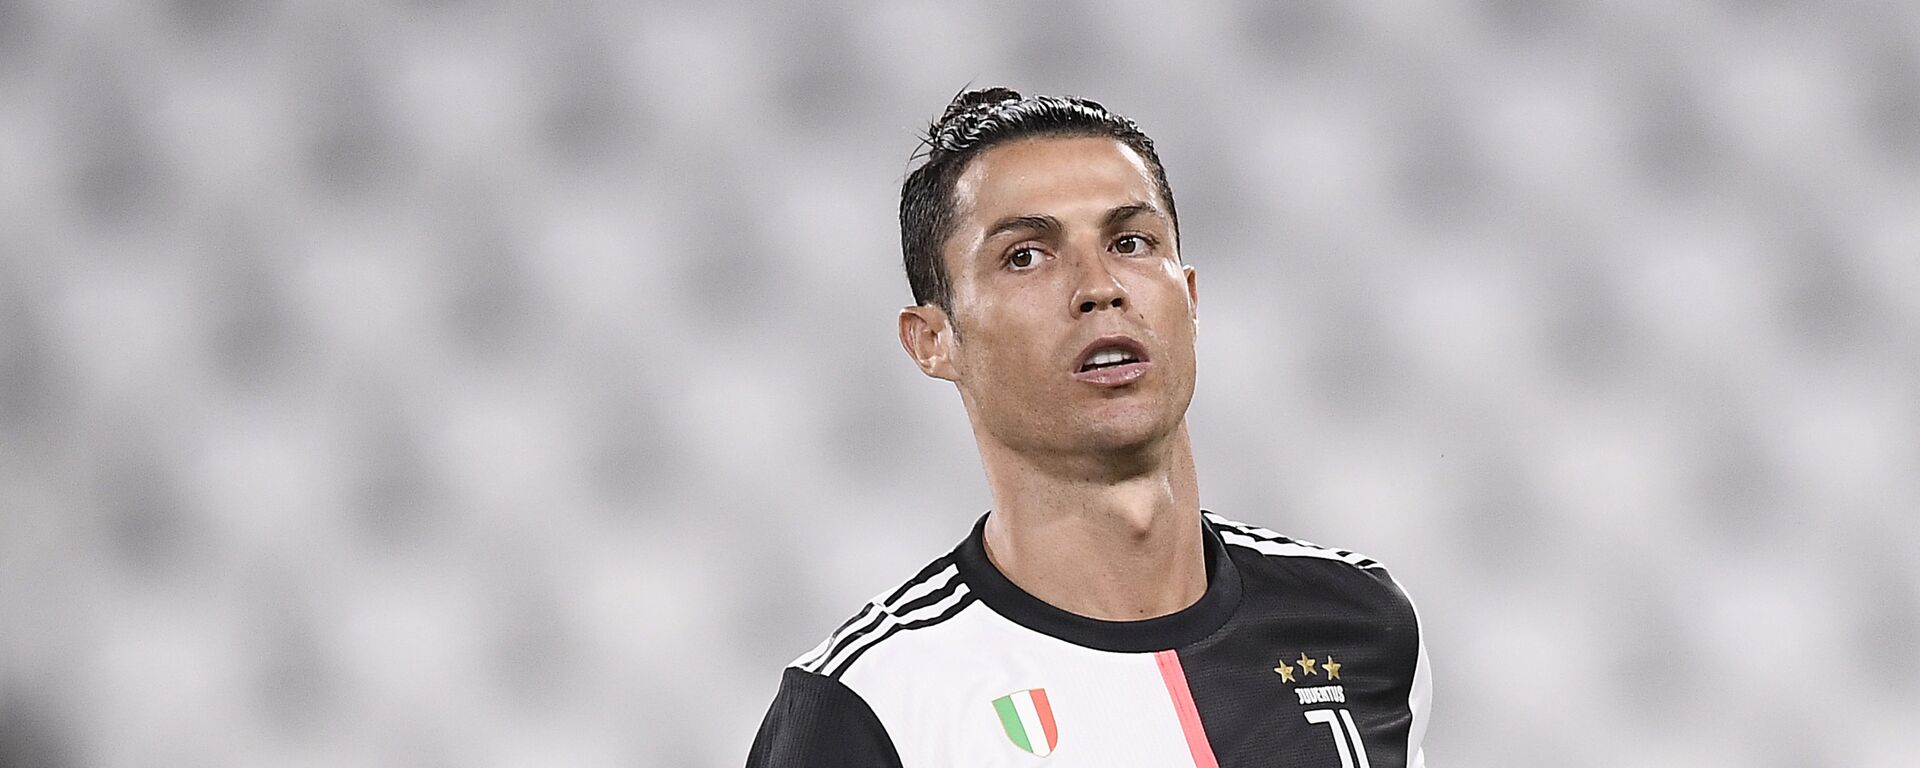 El futbolista portugués Cristiano Ronaldo jugando para la Juventus de Italia - Sputnik Mundo, 1920, 09.10.2021